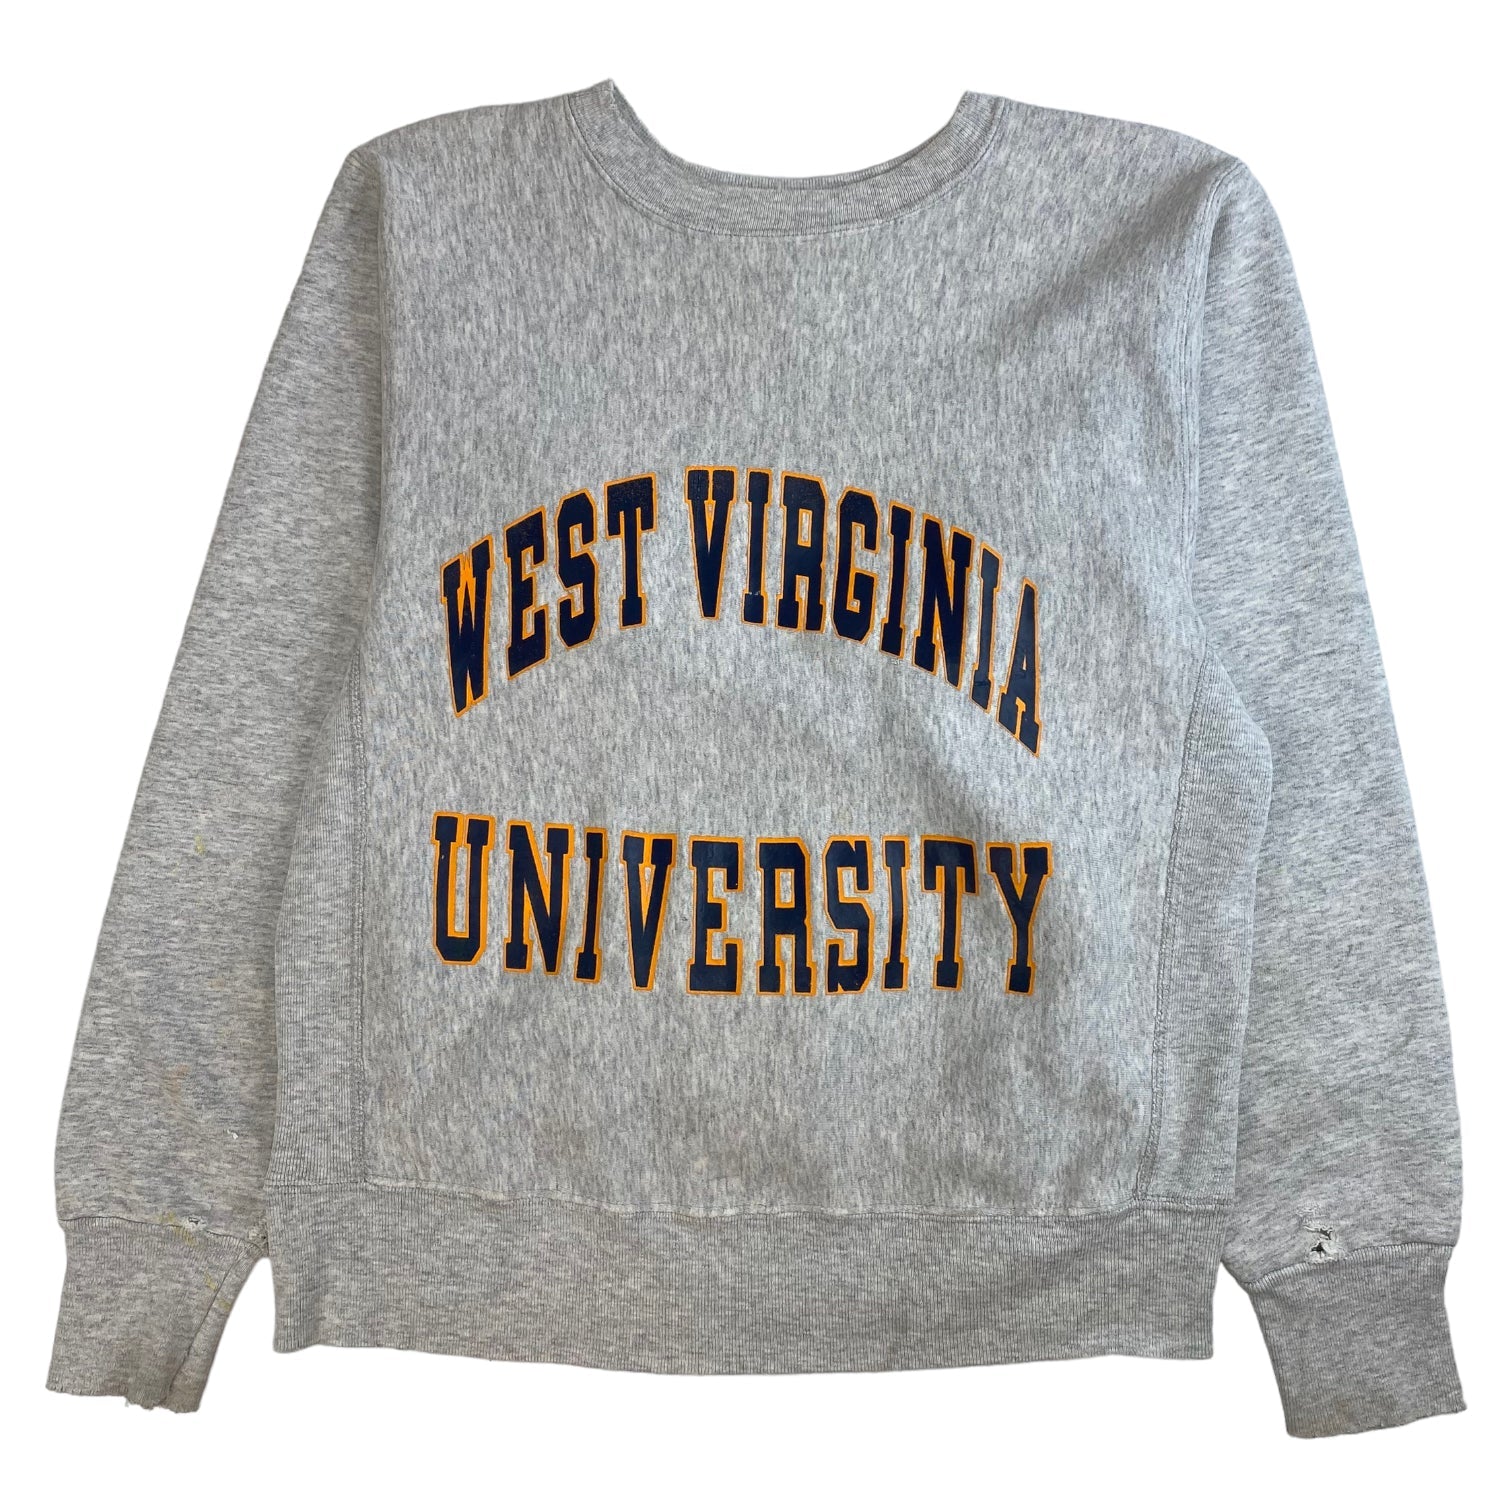 Vintage West Virginia University Crewneck Grey